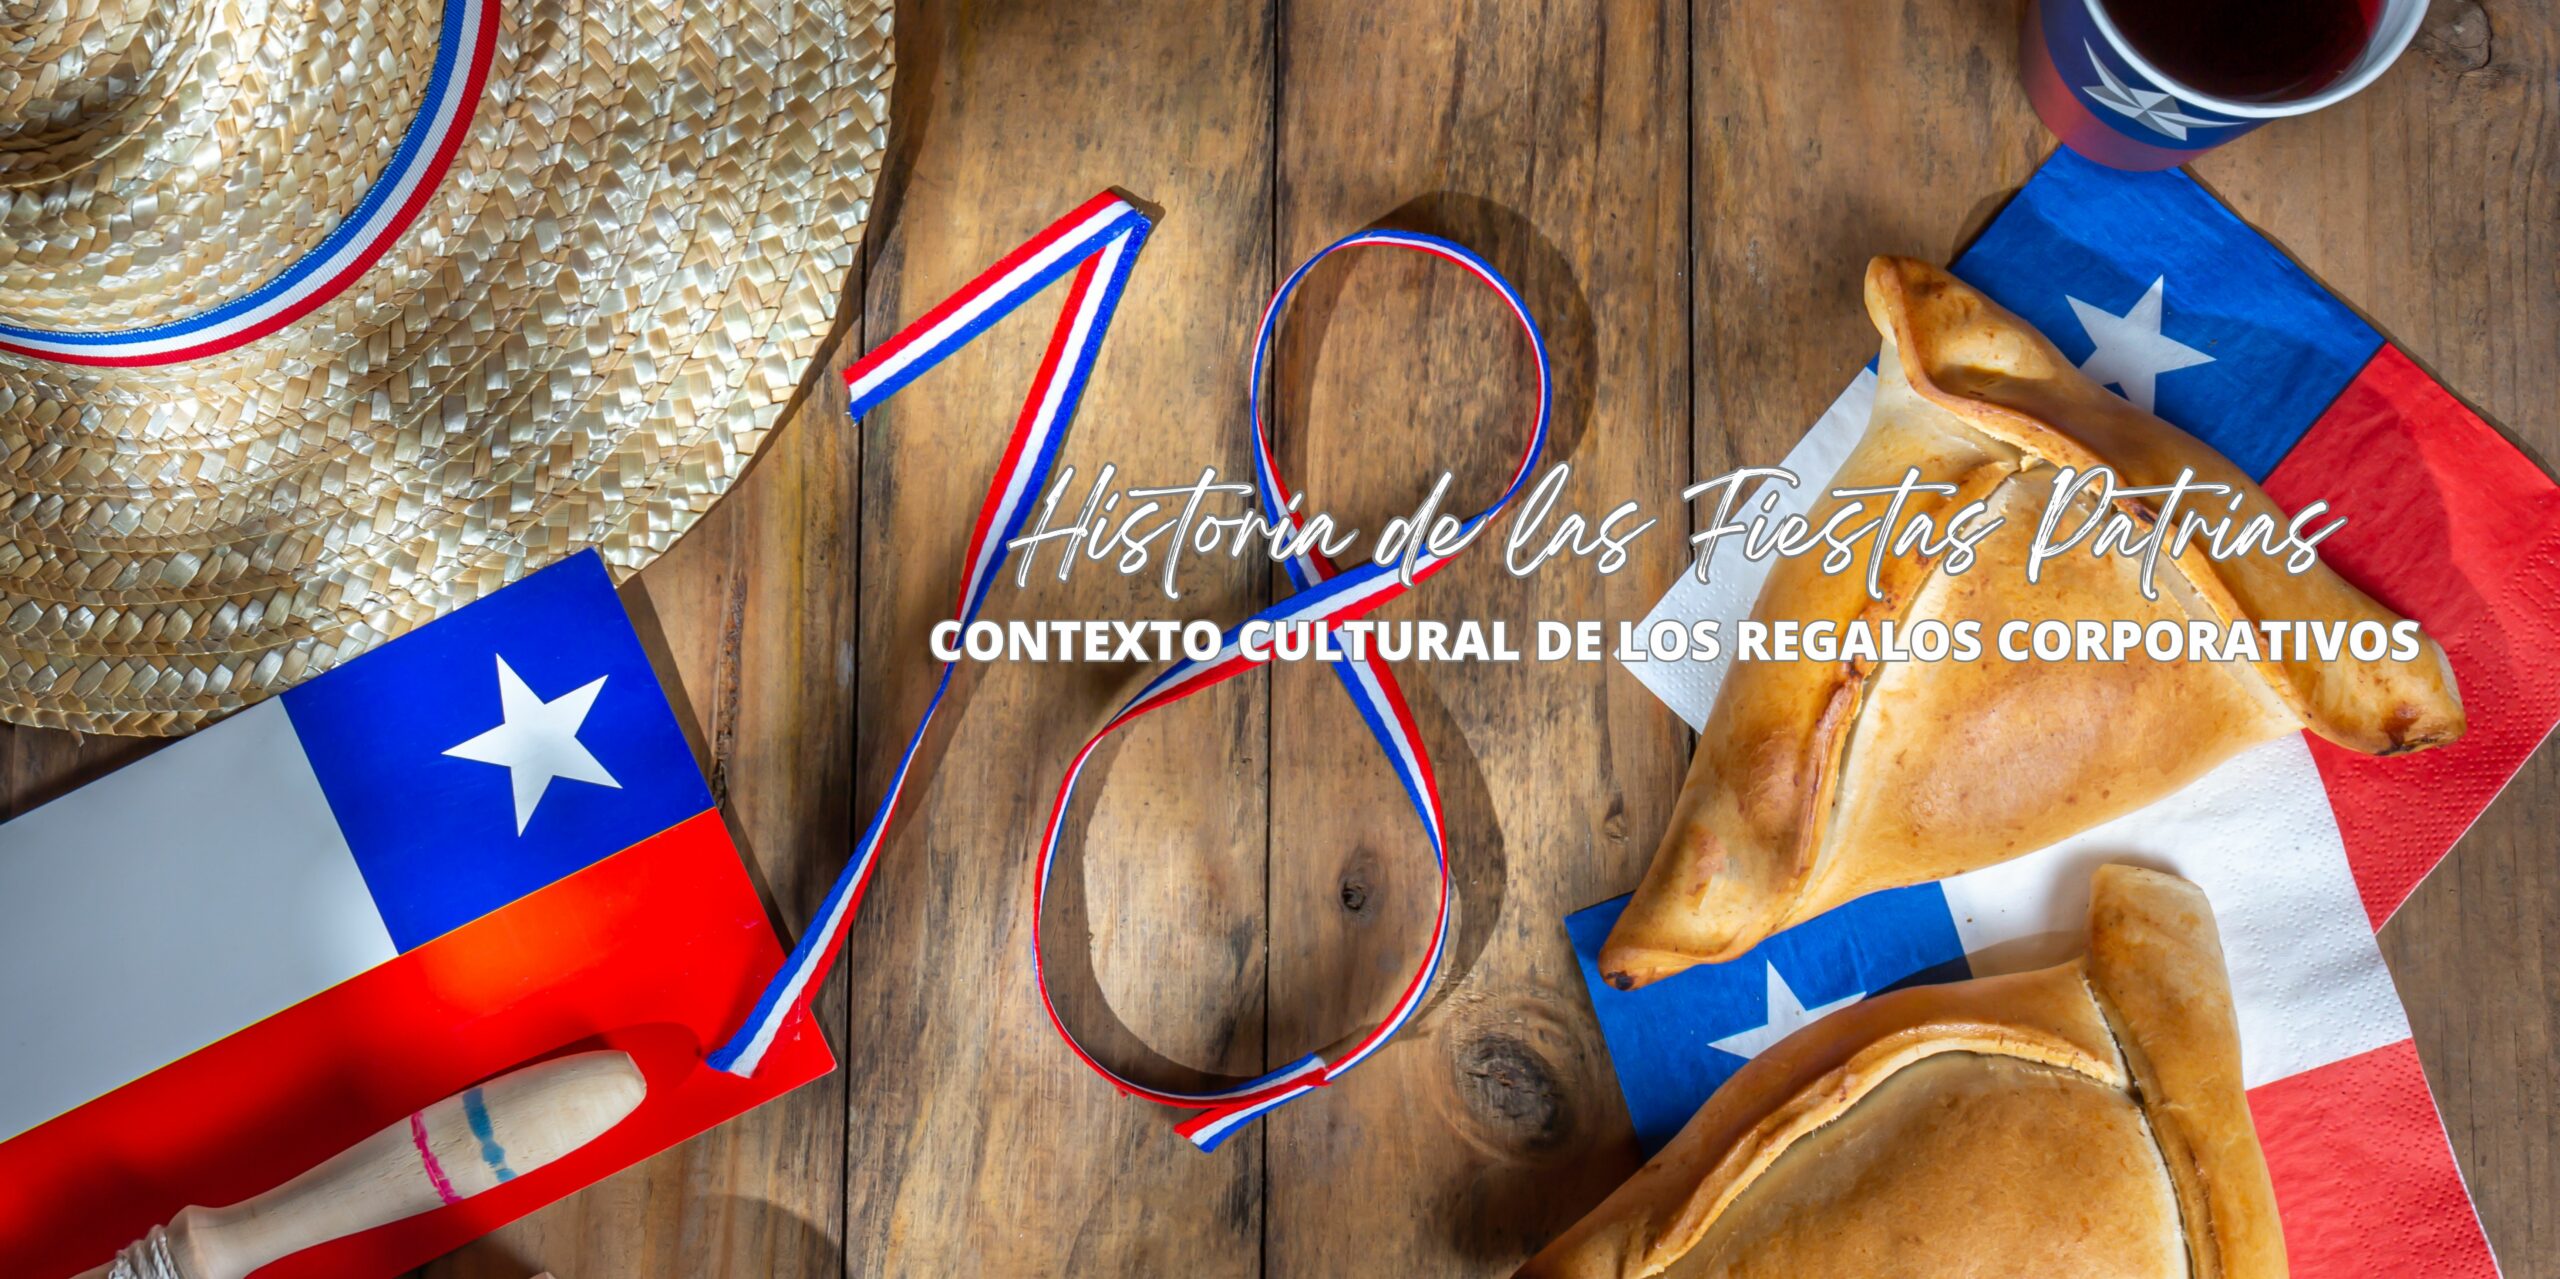 Historia y Significado de las Fiestas Patrias en Chile: Un Contexto Cultural para los Regalos Corporativos